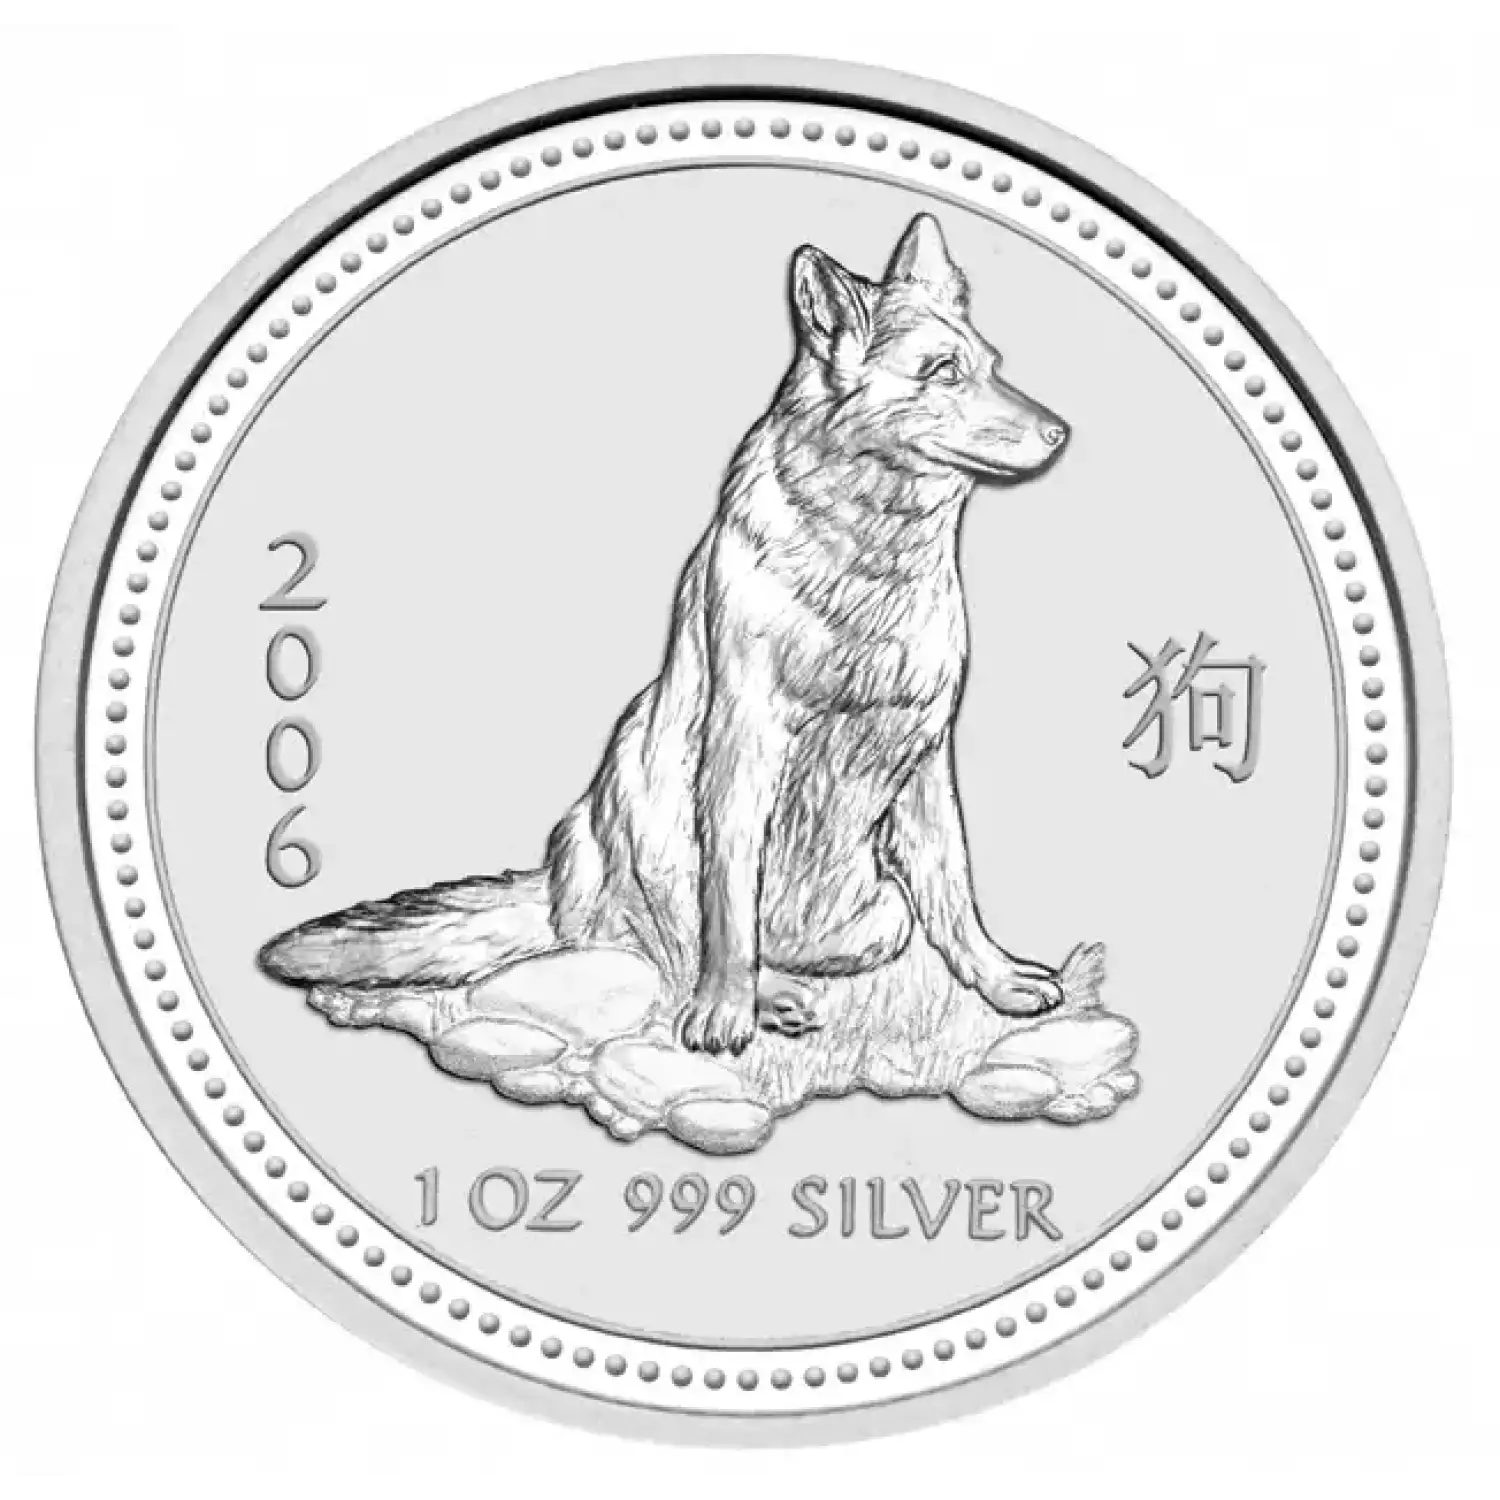 2006 1 oz Australian Perth Mint Silver Lunar: Year of the Dog (2)